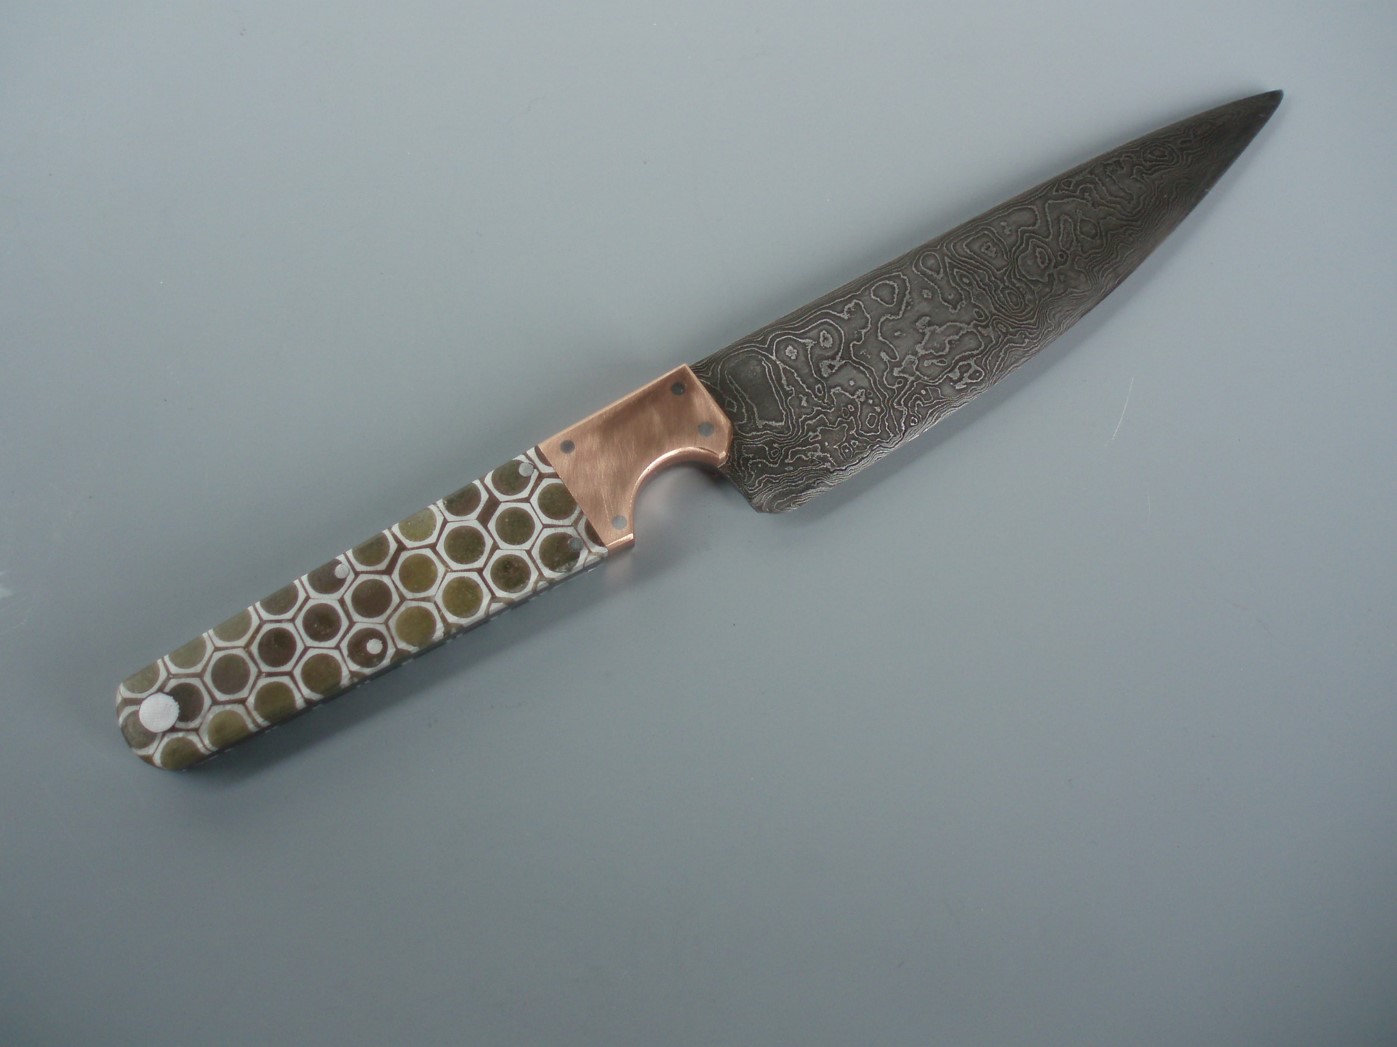 Knife titled 'Honey Comb'